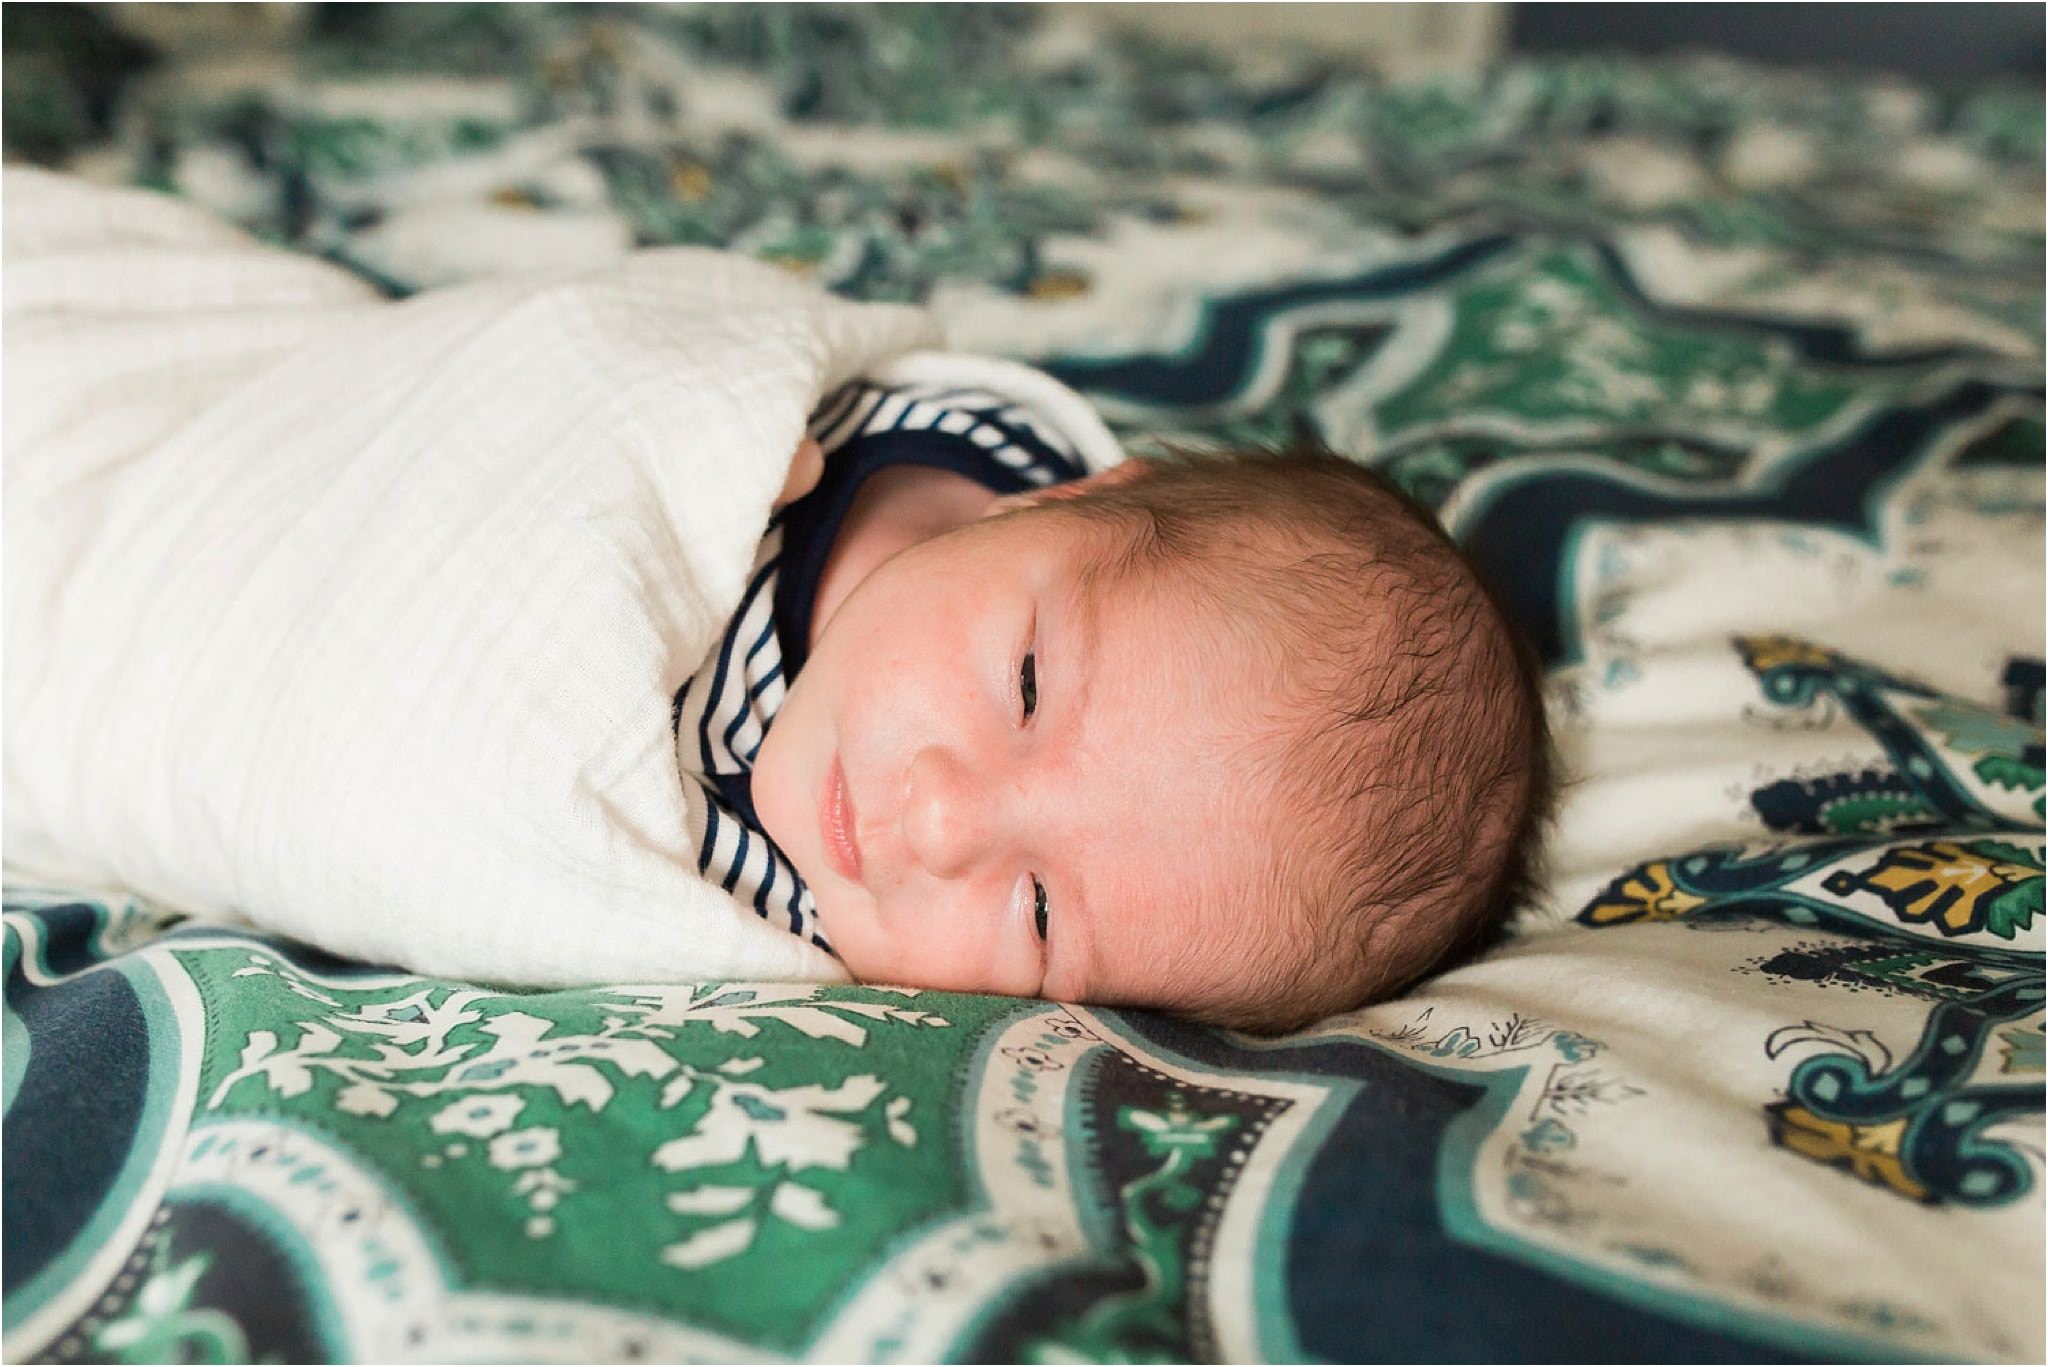 Newborn Photography Pittsburgh